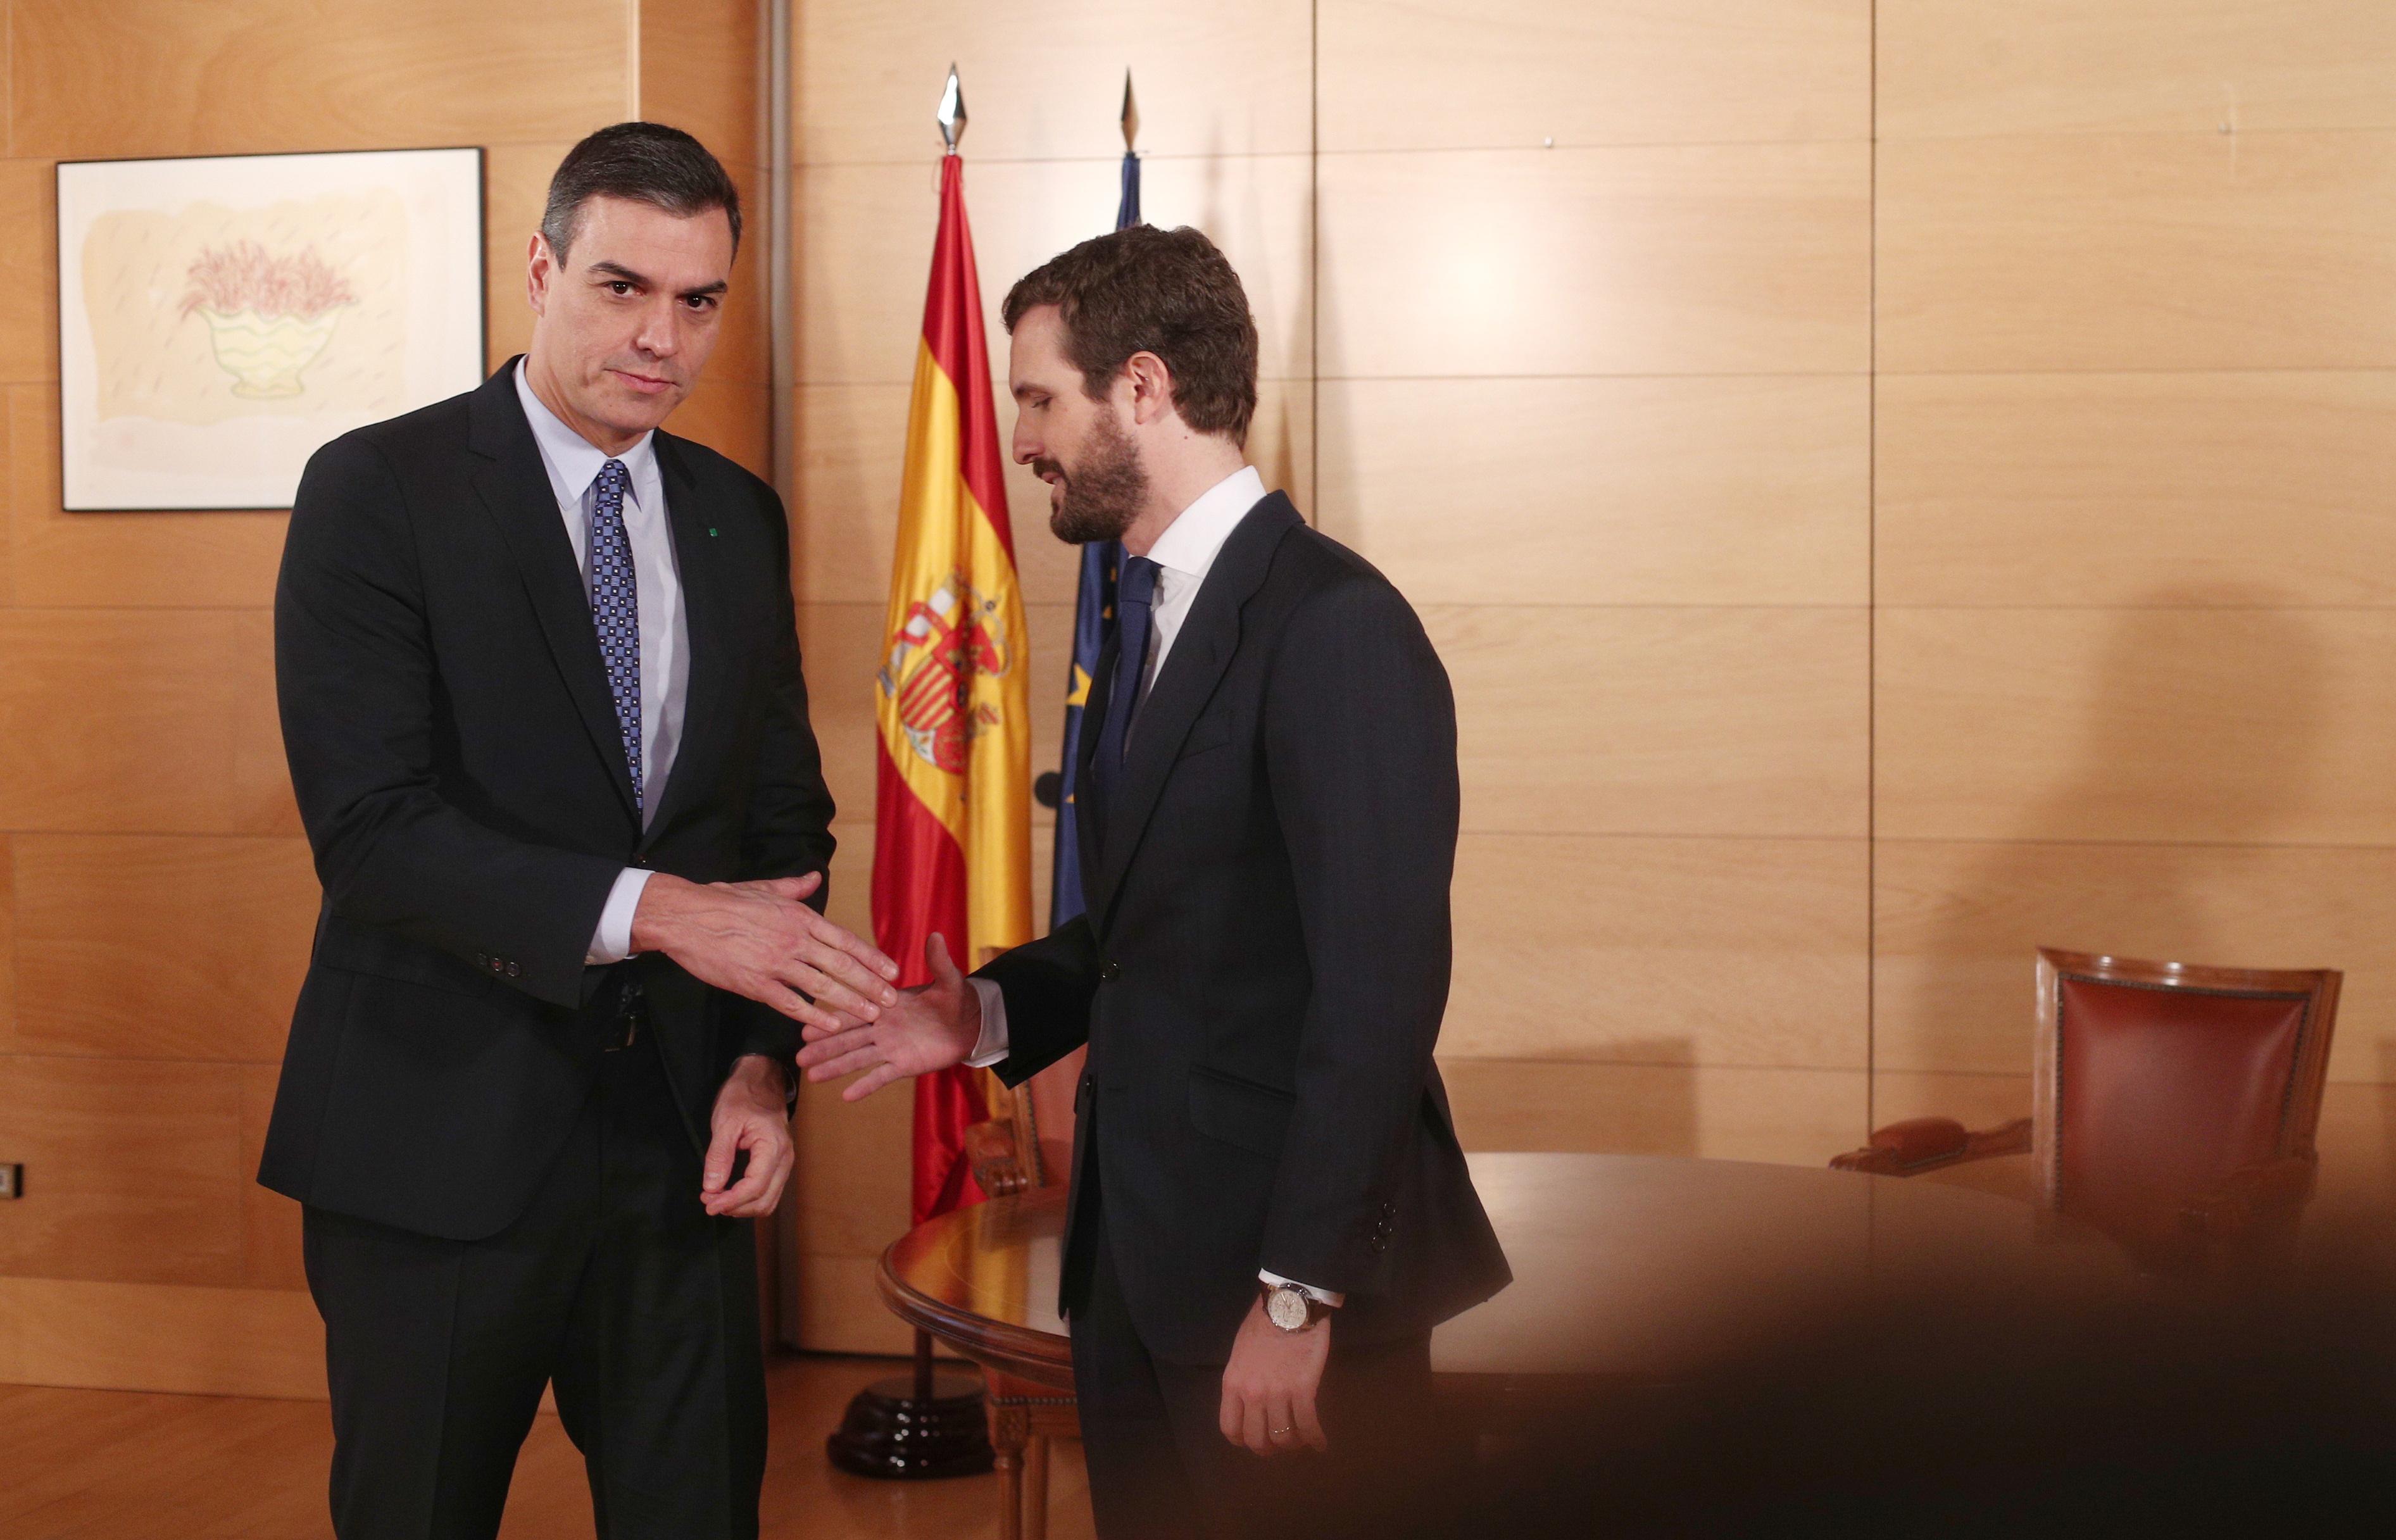 El presidente del Gobierno en funciones Pedro Sánchez (izq) y el presidente del PP Pablo Casado (dech) se saludan momentos antes de su reunión en el Congreso de los Diputados en Madrid (España) a